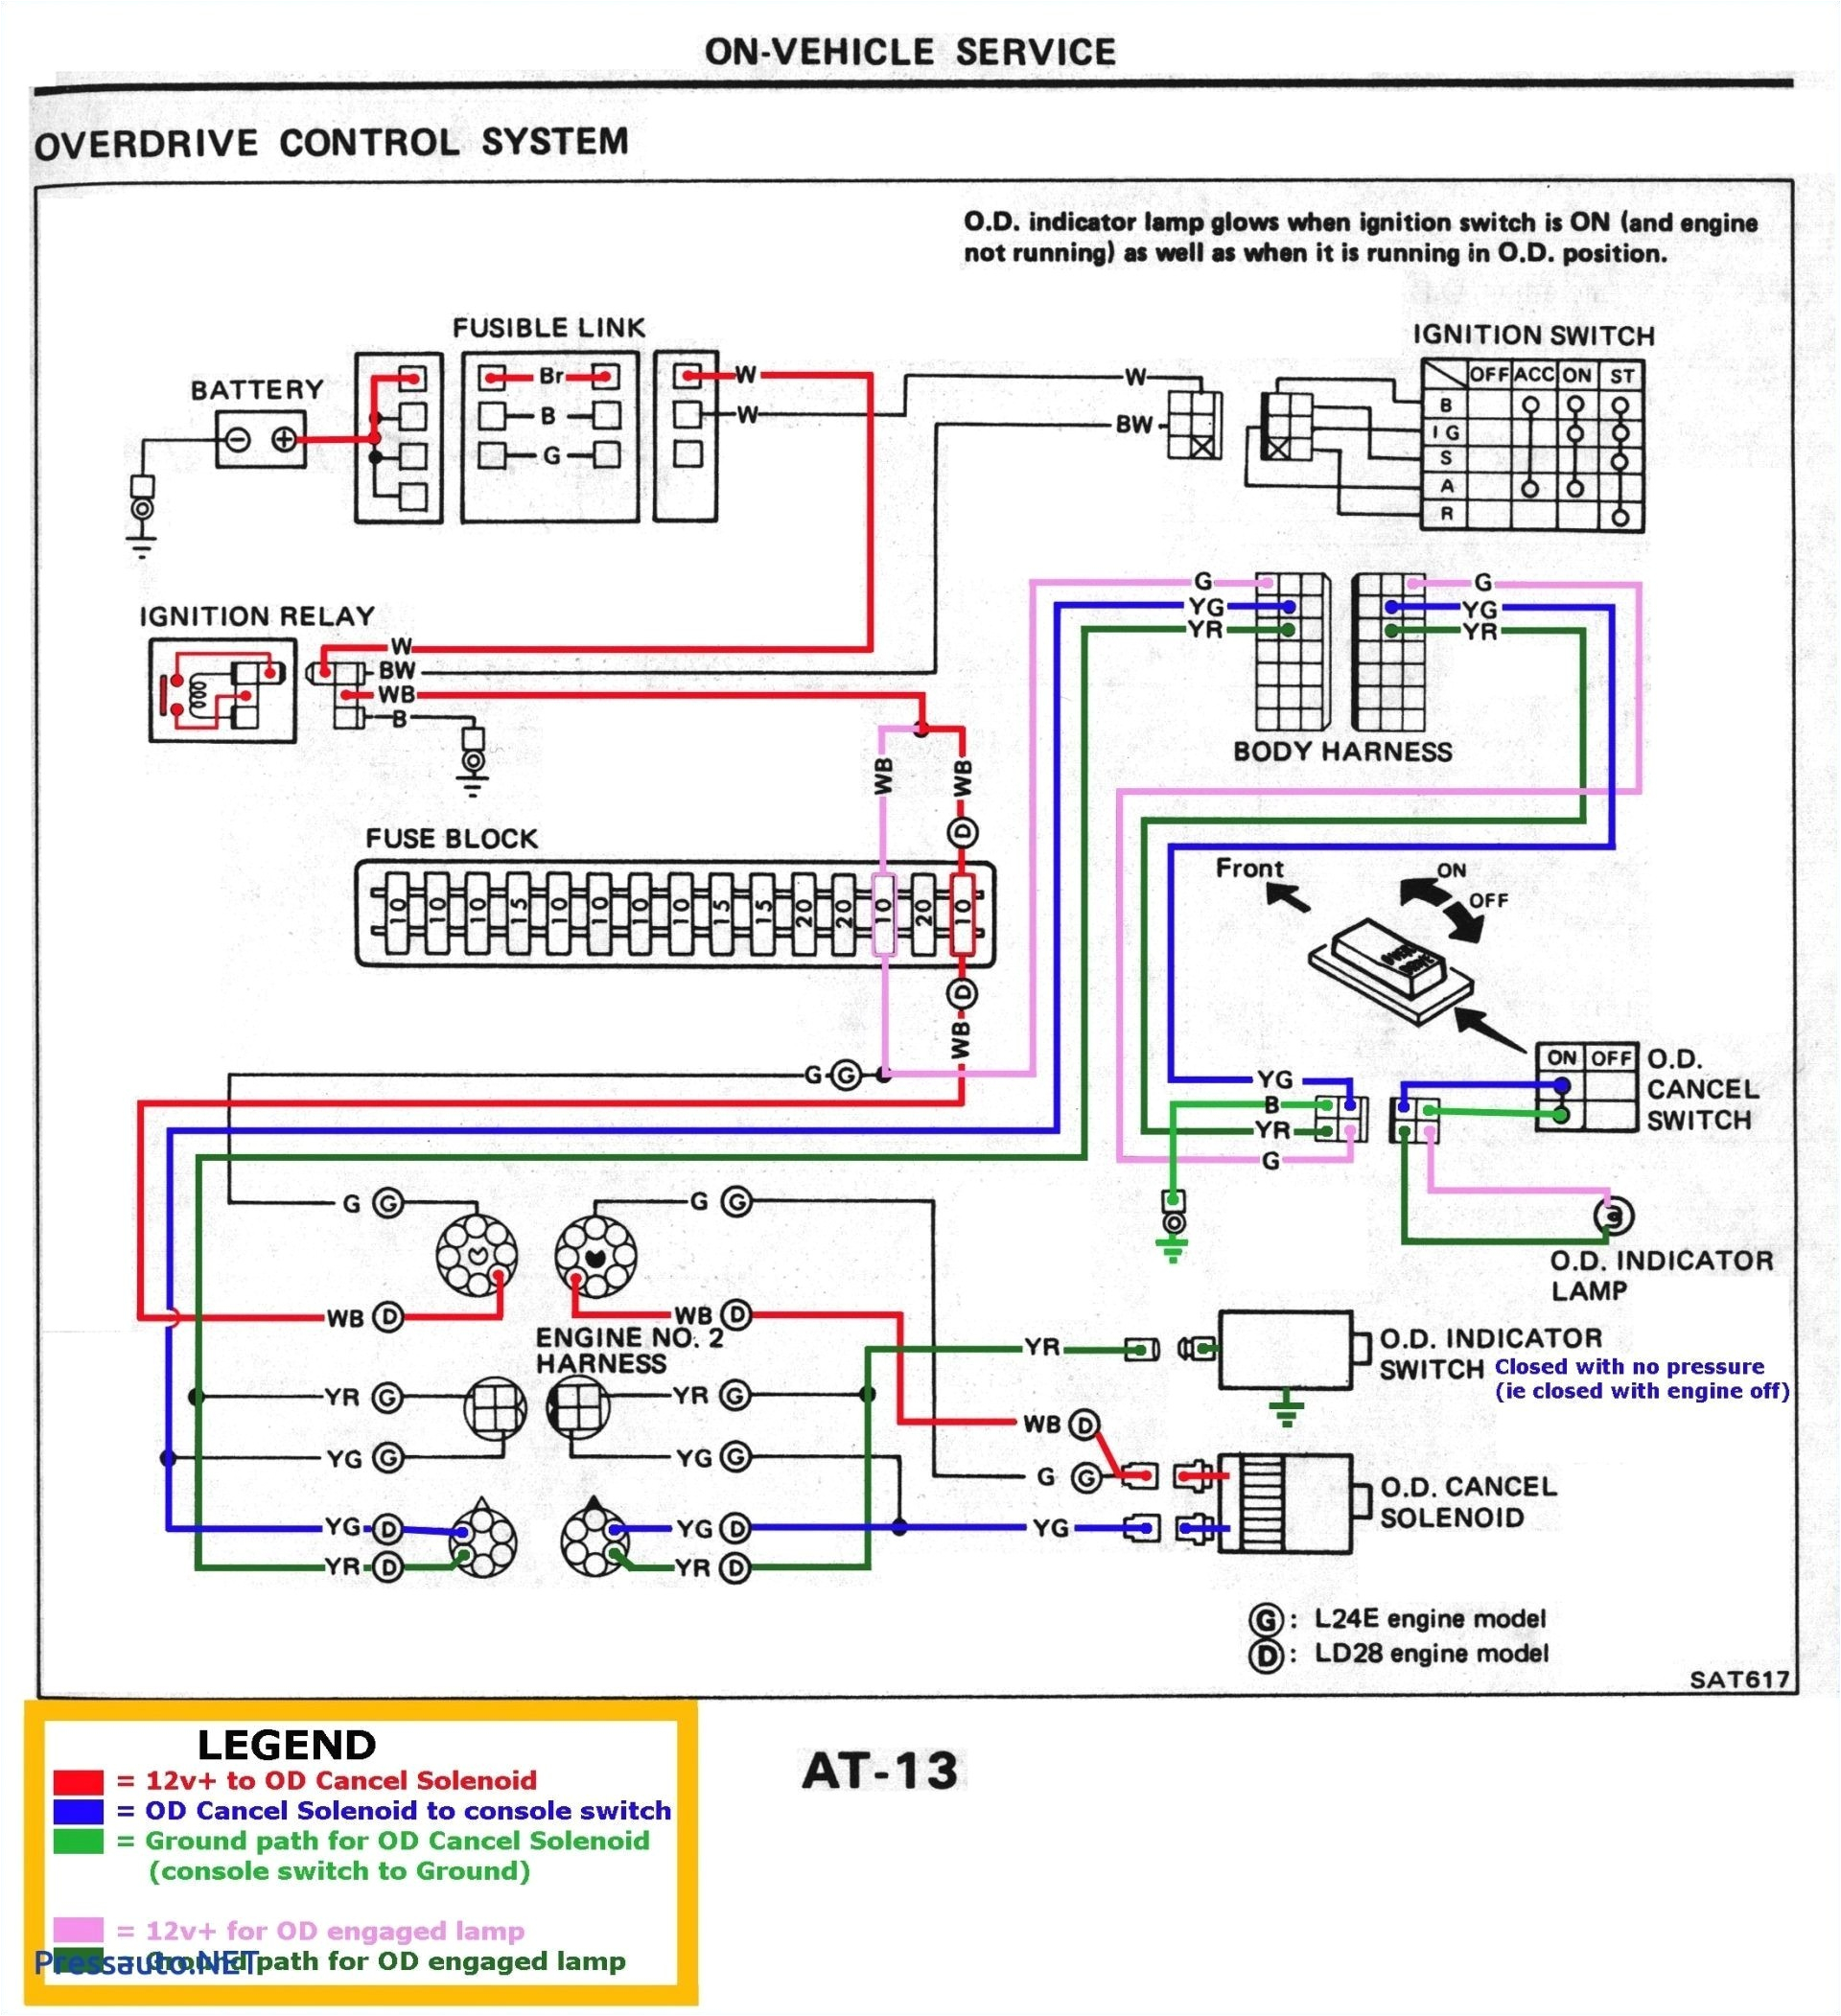 schematics wiring jlg155 wiring diagram mega schematics wiring jlg155